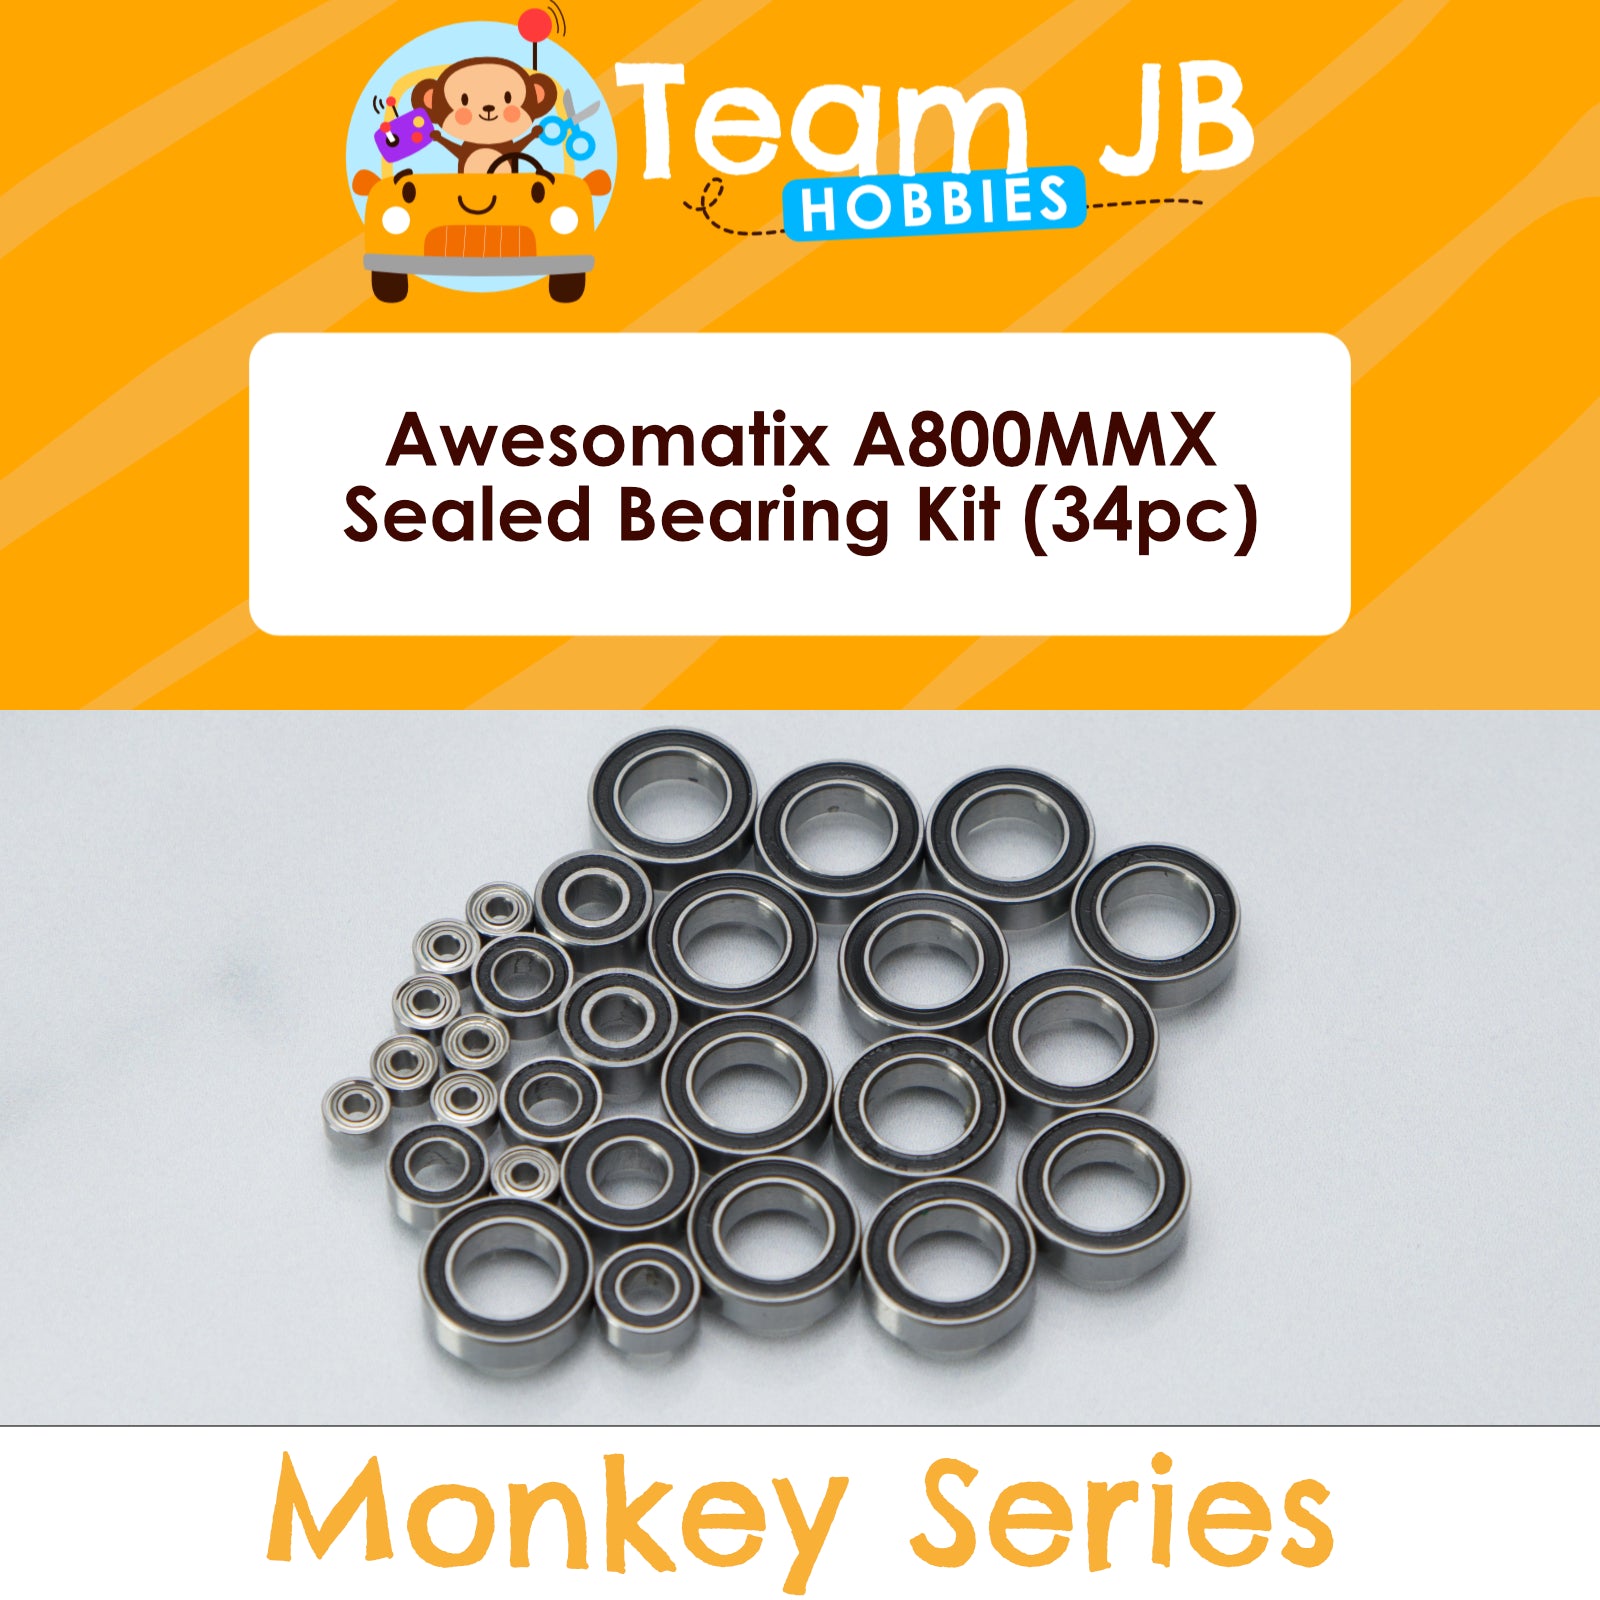 Awesomatix A800MMX - Sealed Bearing Kit